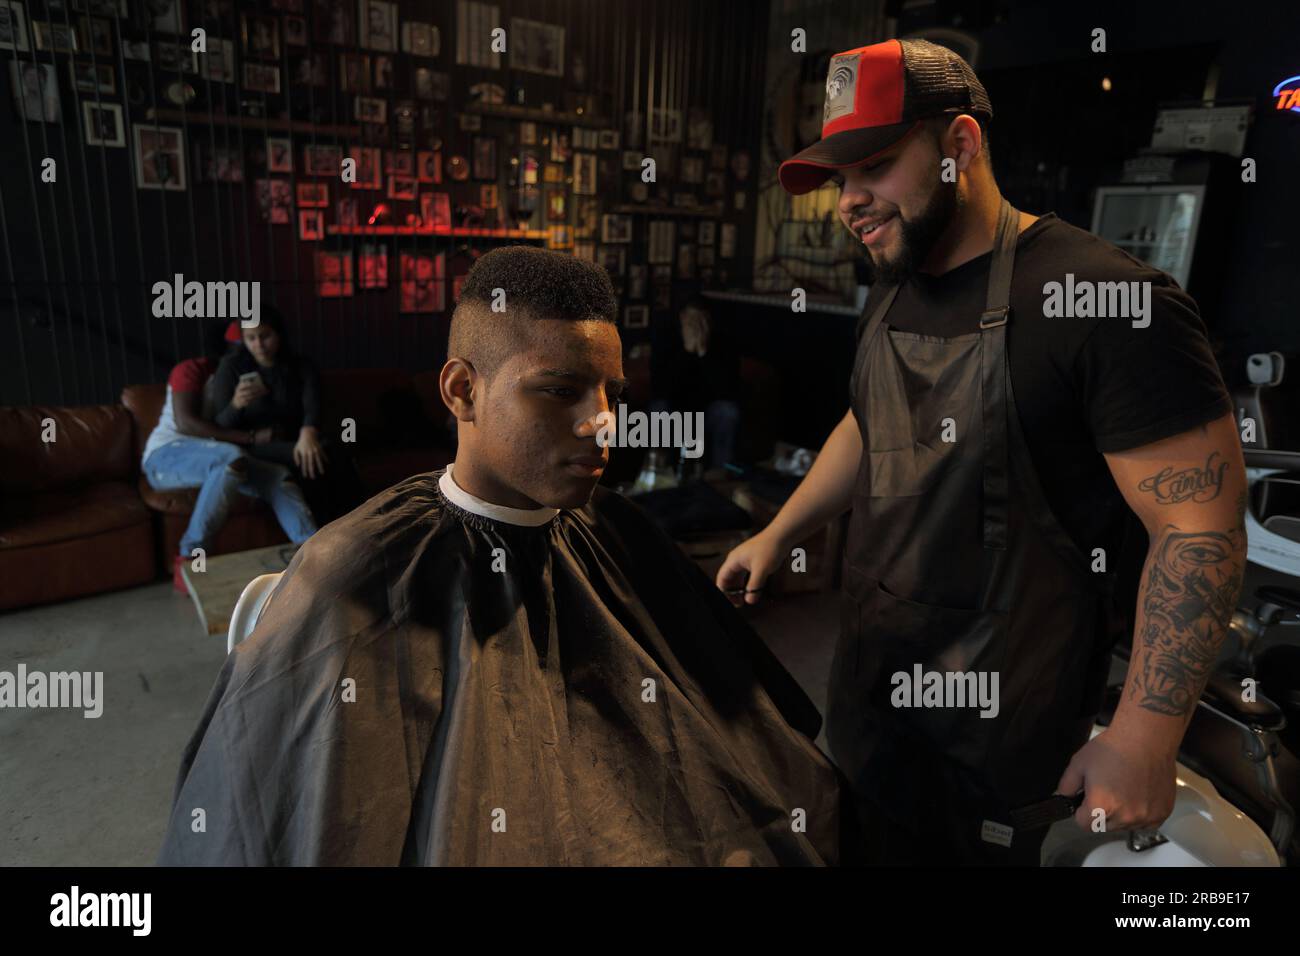 Friseurin, der den Kunden im Salon bedient. Ein junger Mann bekommt einen trendigen Haarschnitt im Friseursalon. Frankfurt am Main, Deutschland Stockfoto